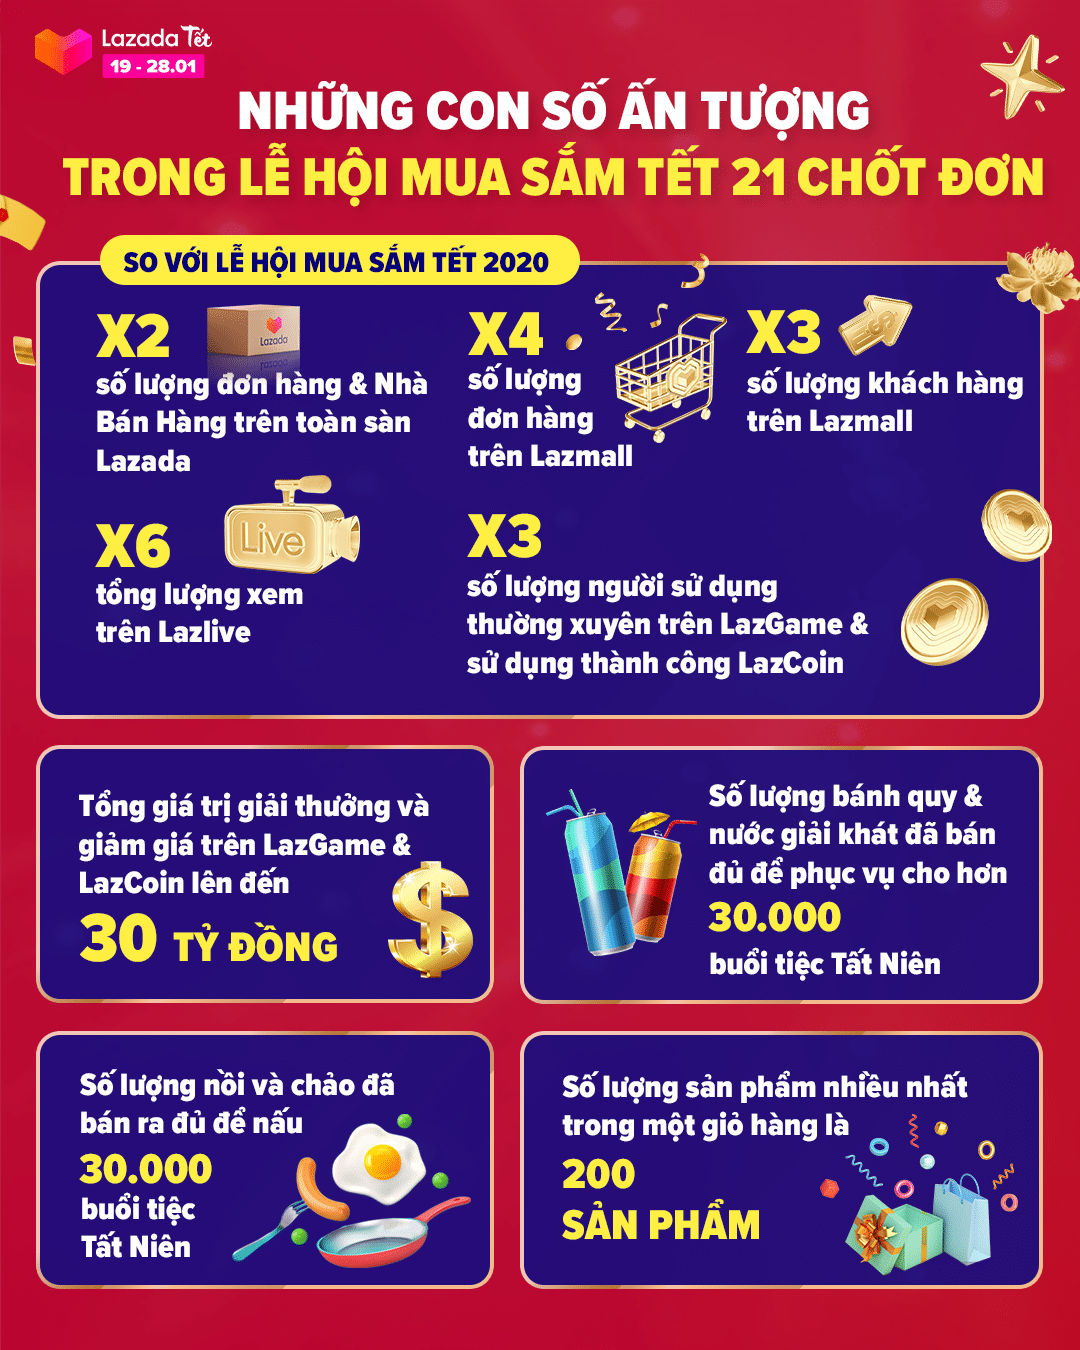 Lazada Việt Nam ghi nhận số lượng đơn hàng và nhà bán hàng tăng gấp đôi trong lễ hội mua sắm trước thềm Tết Nguyên Đán